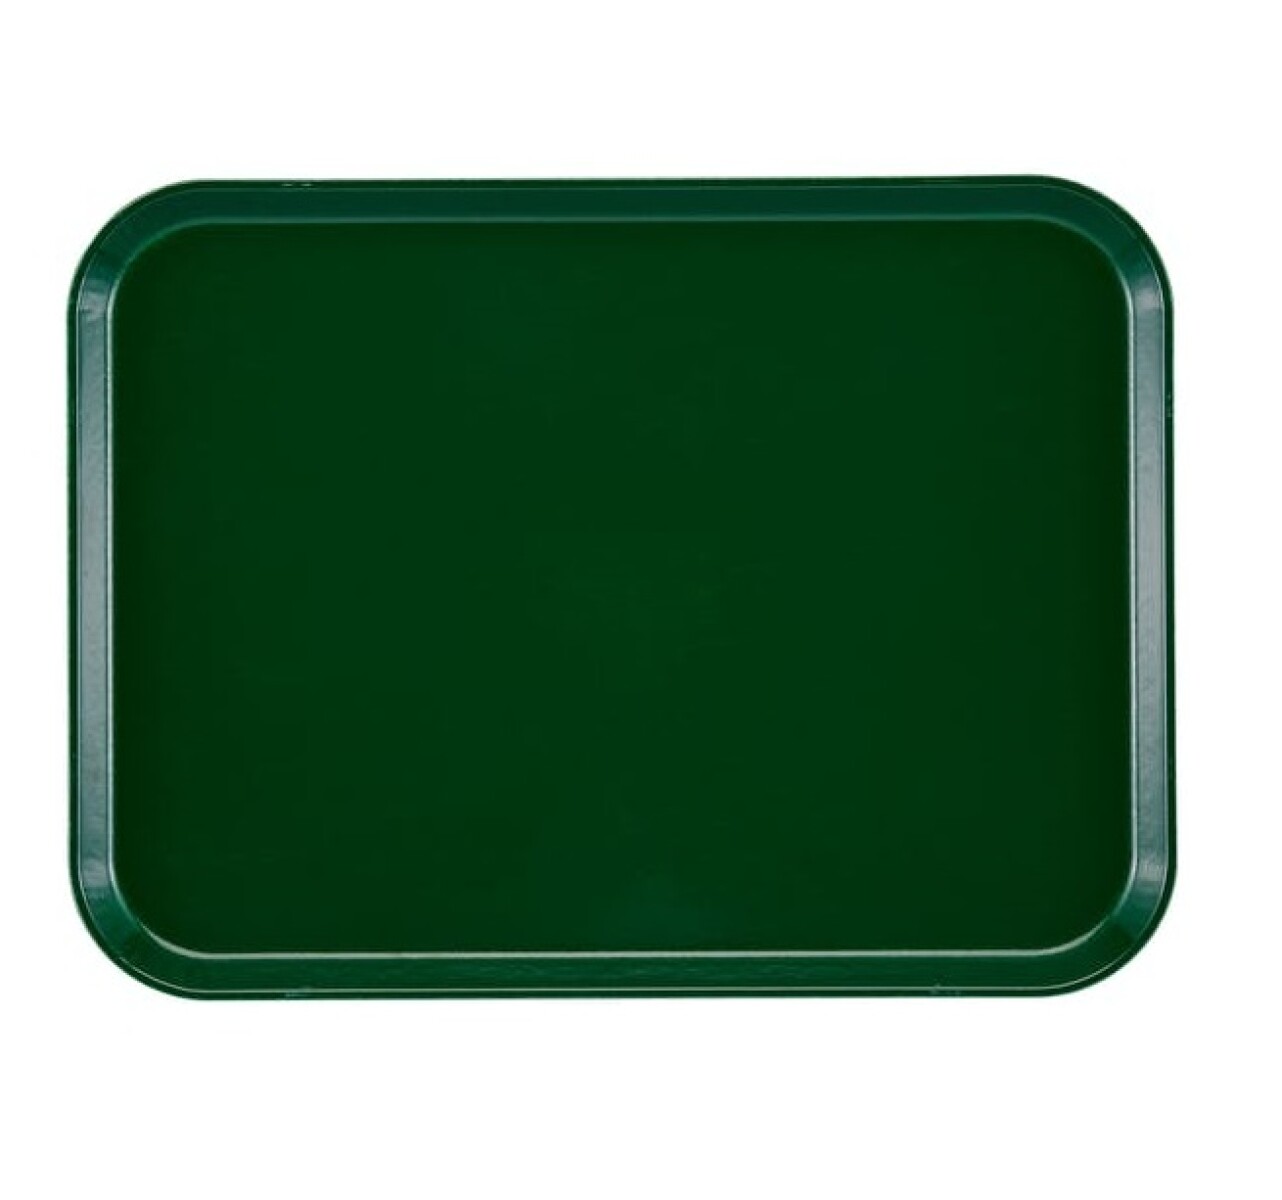 Bandeja Autoservicio Plástica con antideslizante 35 x 45 cm - Verde 